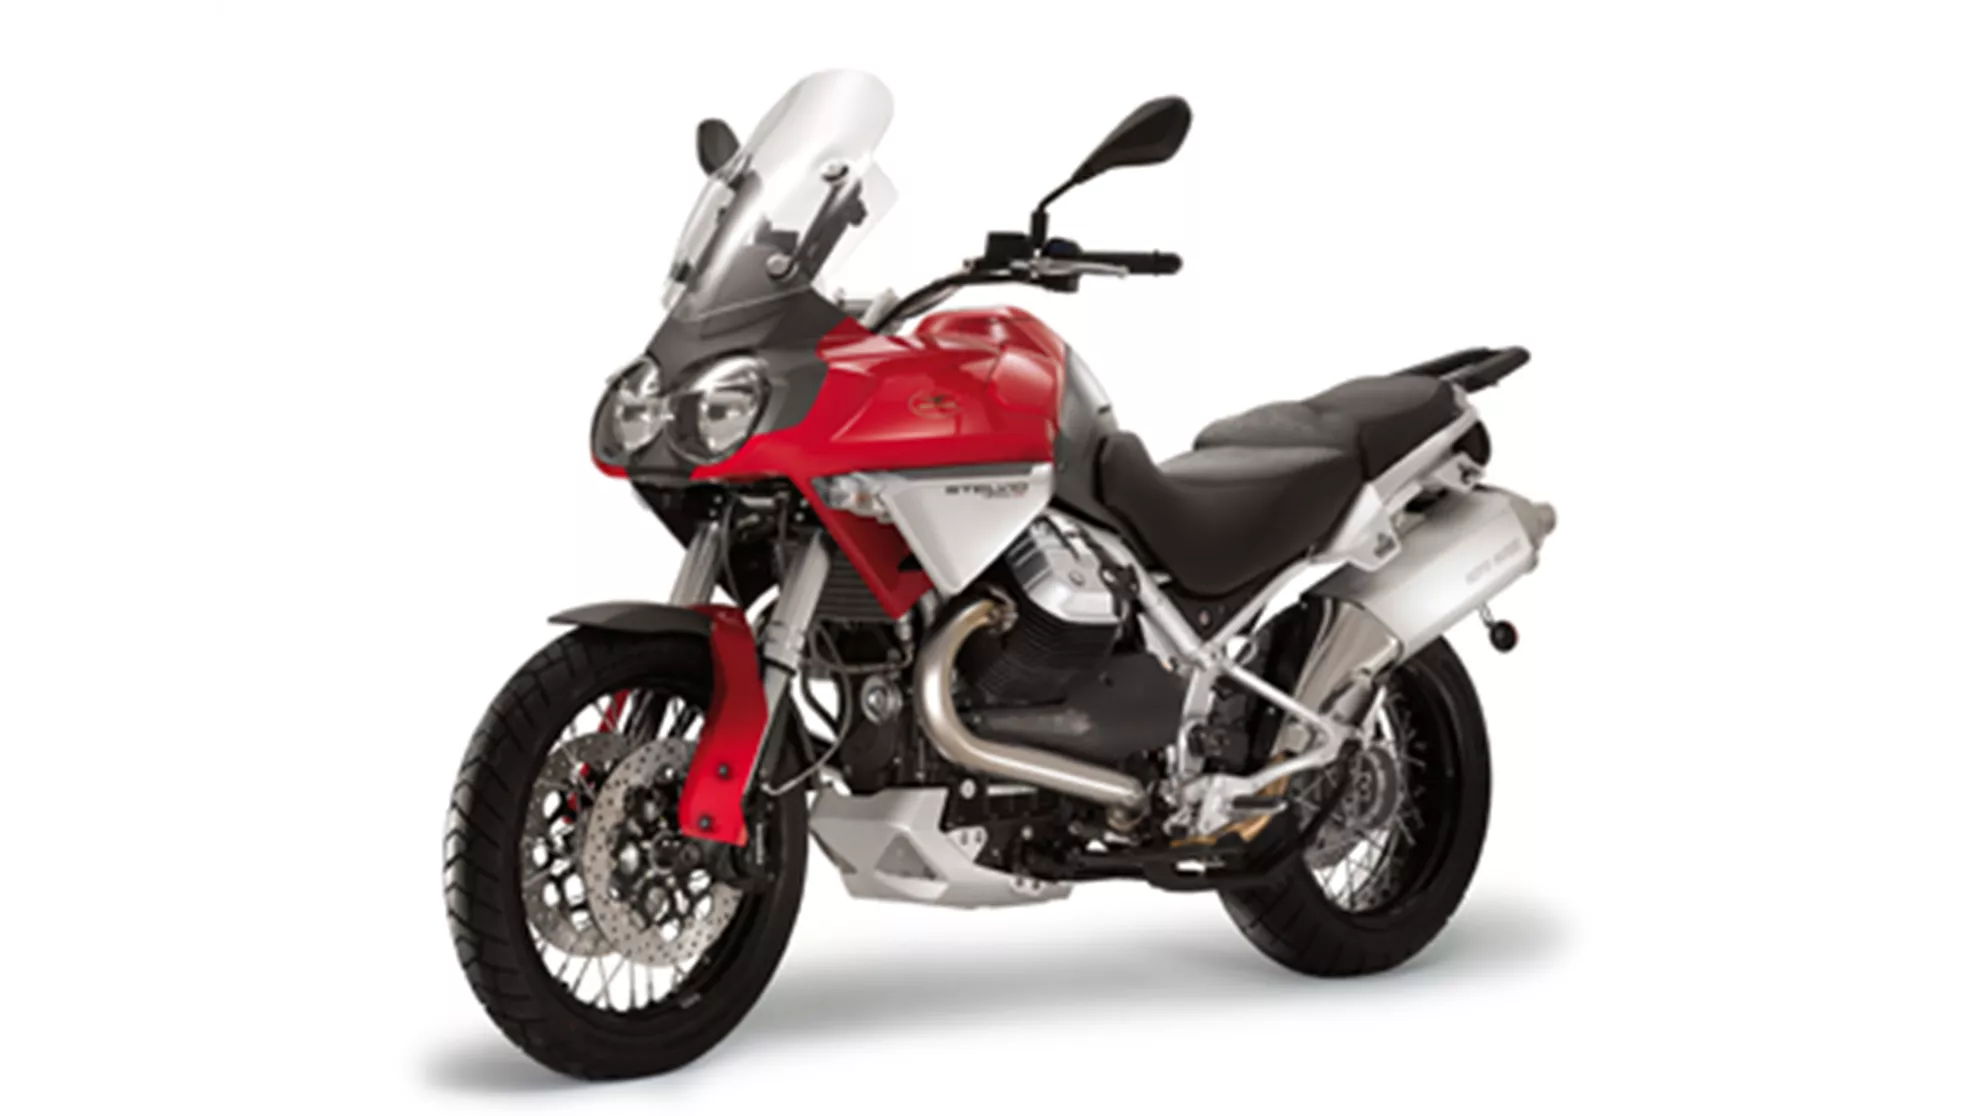 Moto Guzzi Stelvio 1200 4v - Image 1